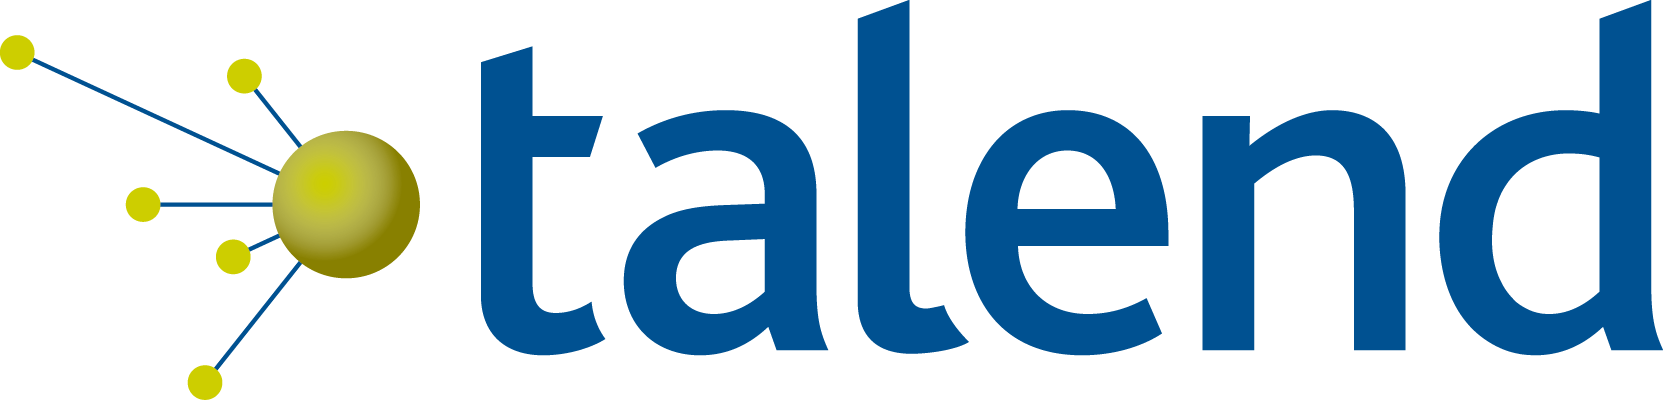 Talend Logo - Talend Big Data Logo (1663x400)